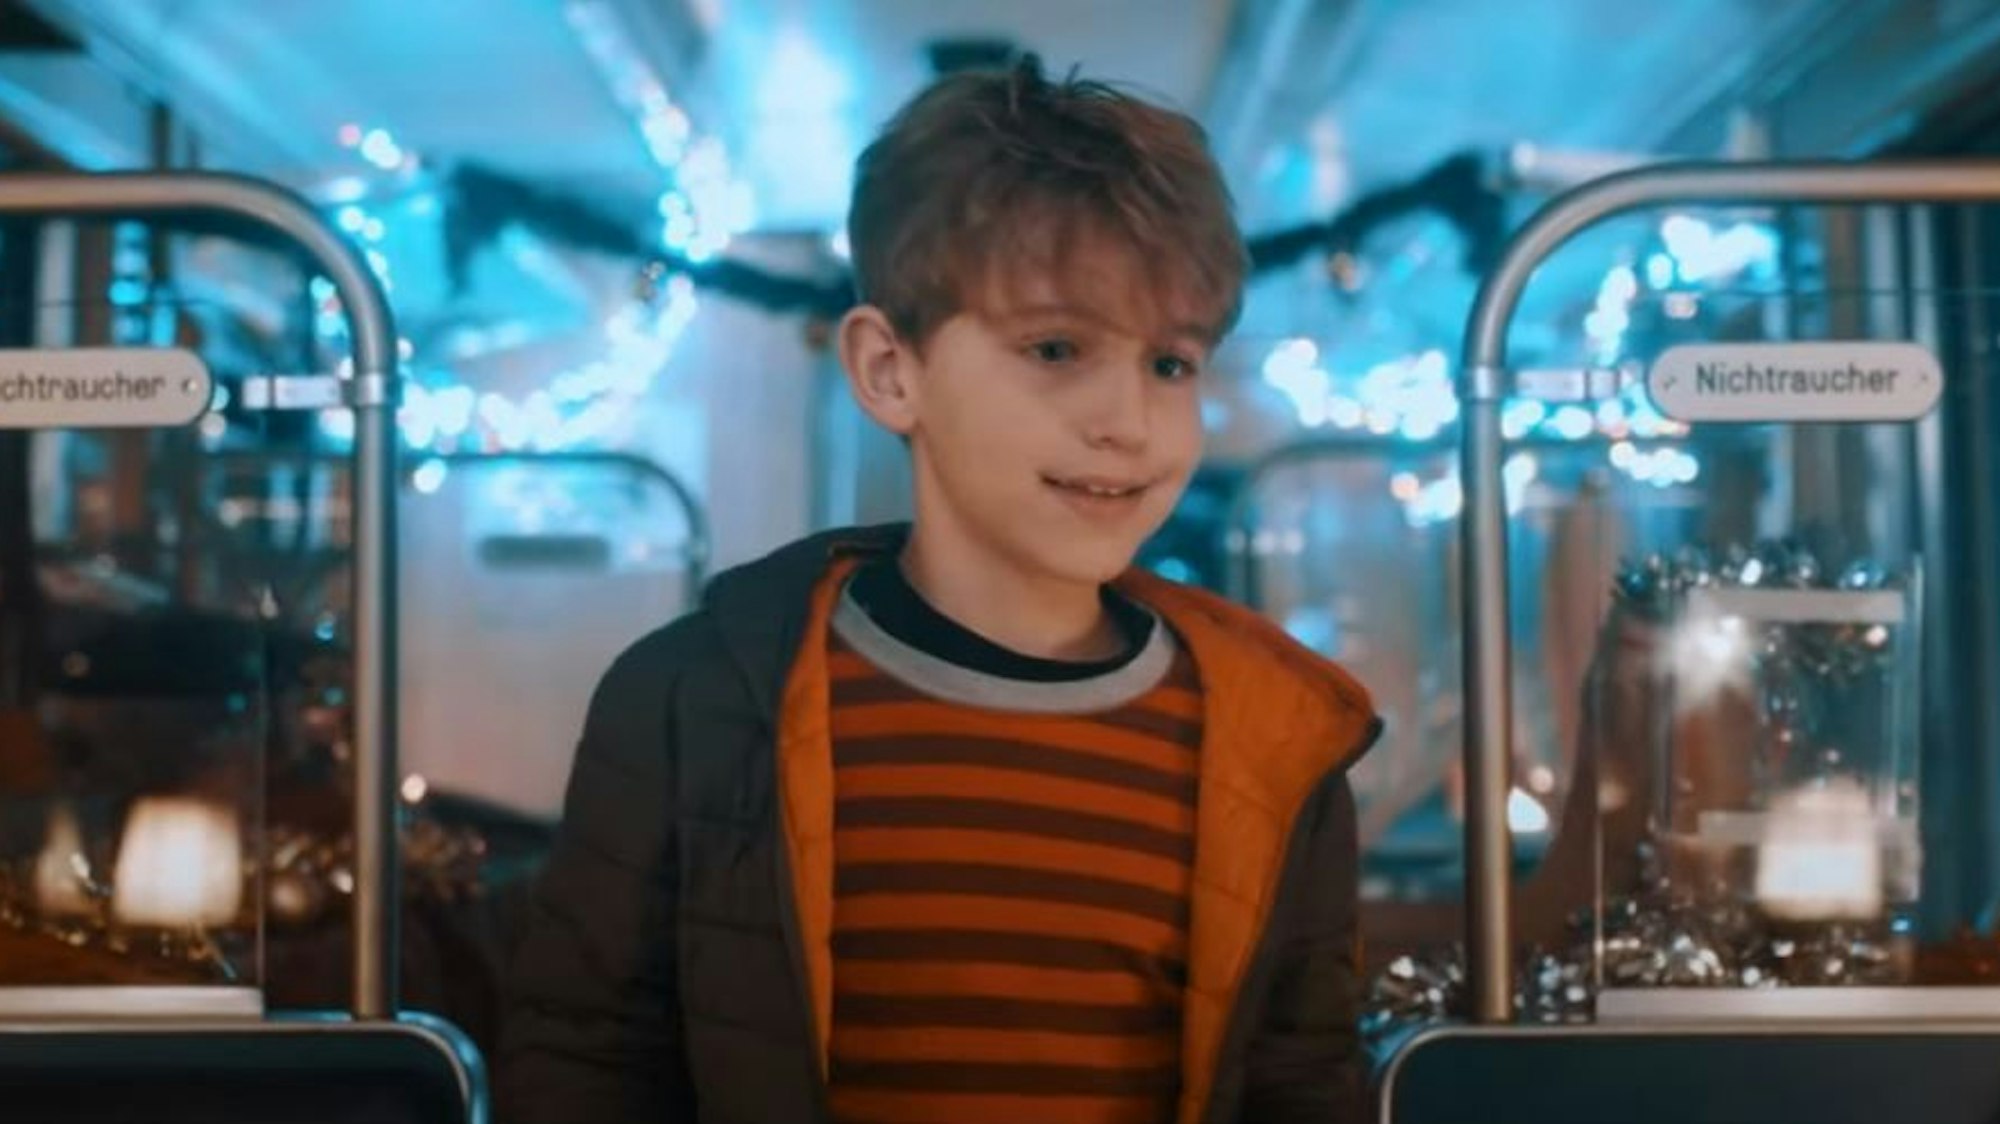 Der kleine Leon geht im Weihnachts-Video der KVB durch einen Zug, der weihnachtlich geschmückt ist.